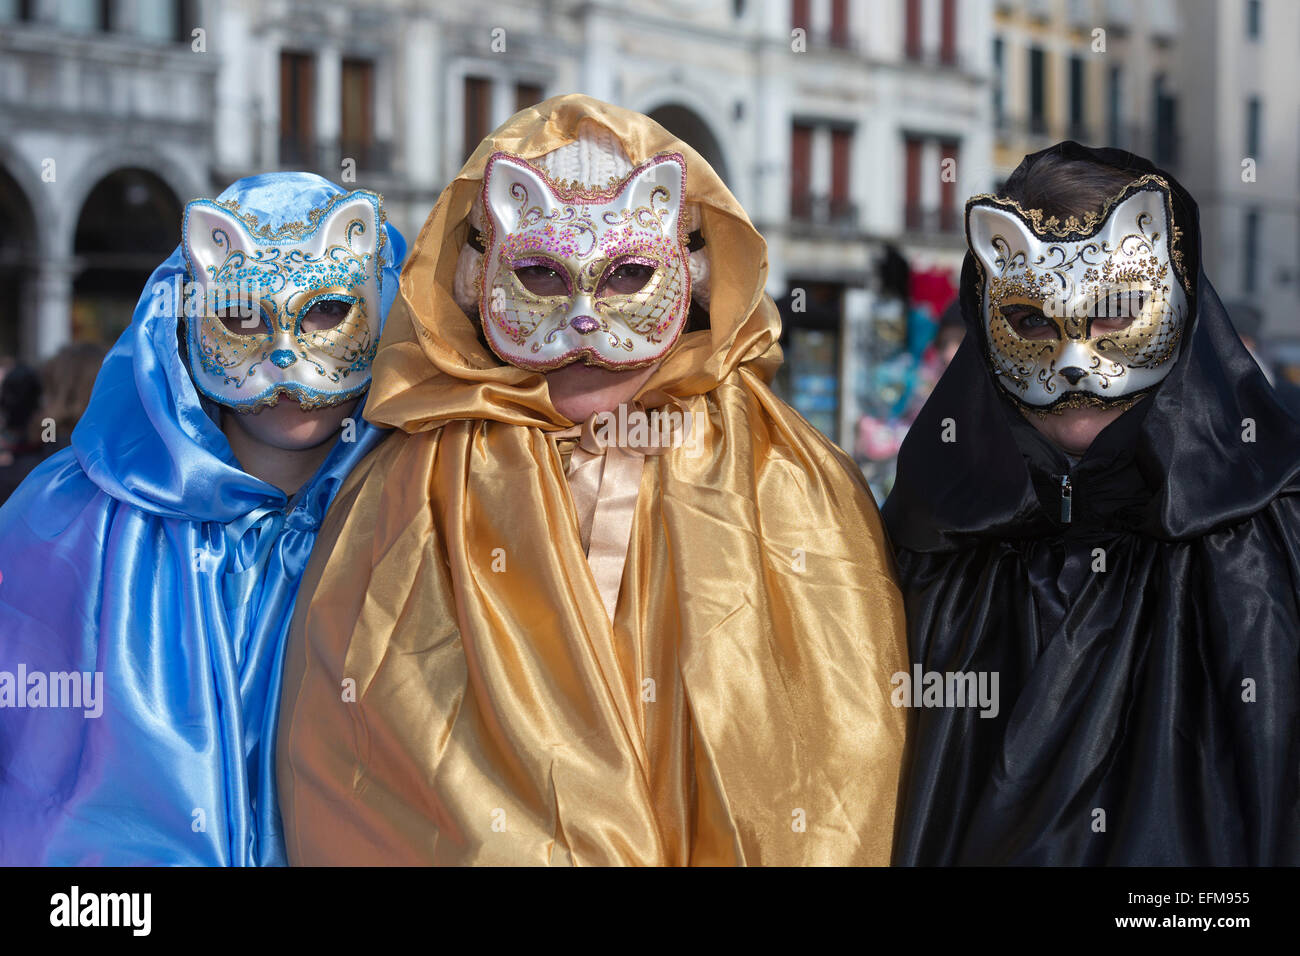 Venedig, Italien. 7. Februar 2015. Platzieren Sie die wichtigsten Karneval in Venedig feiern nehmen diese und am kommenden Wochenende mit Menschen verkleiden und tragen Masken. Foto: Carnivalpix/Alamy Live-Nachrichten Stockfoto